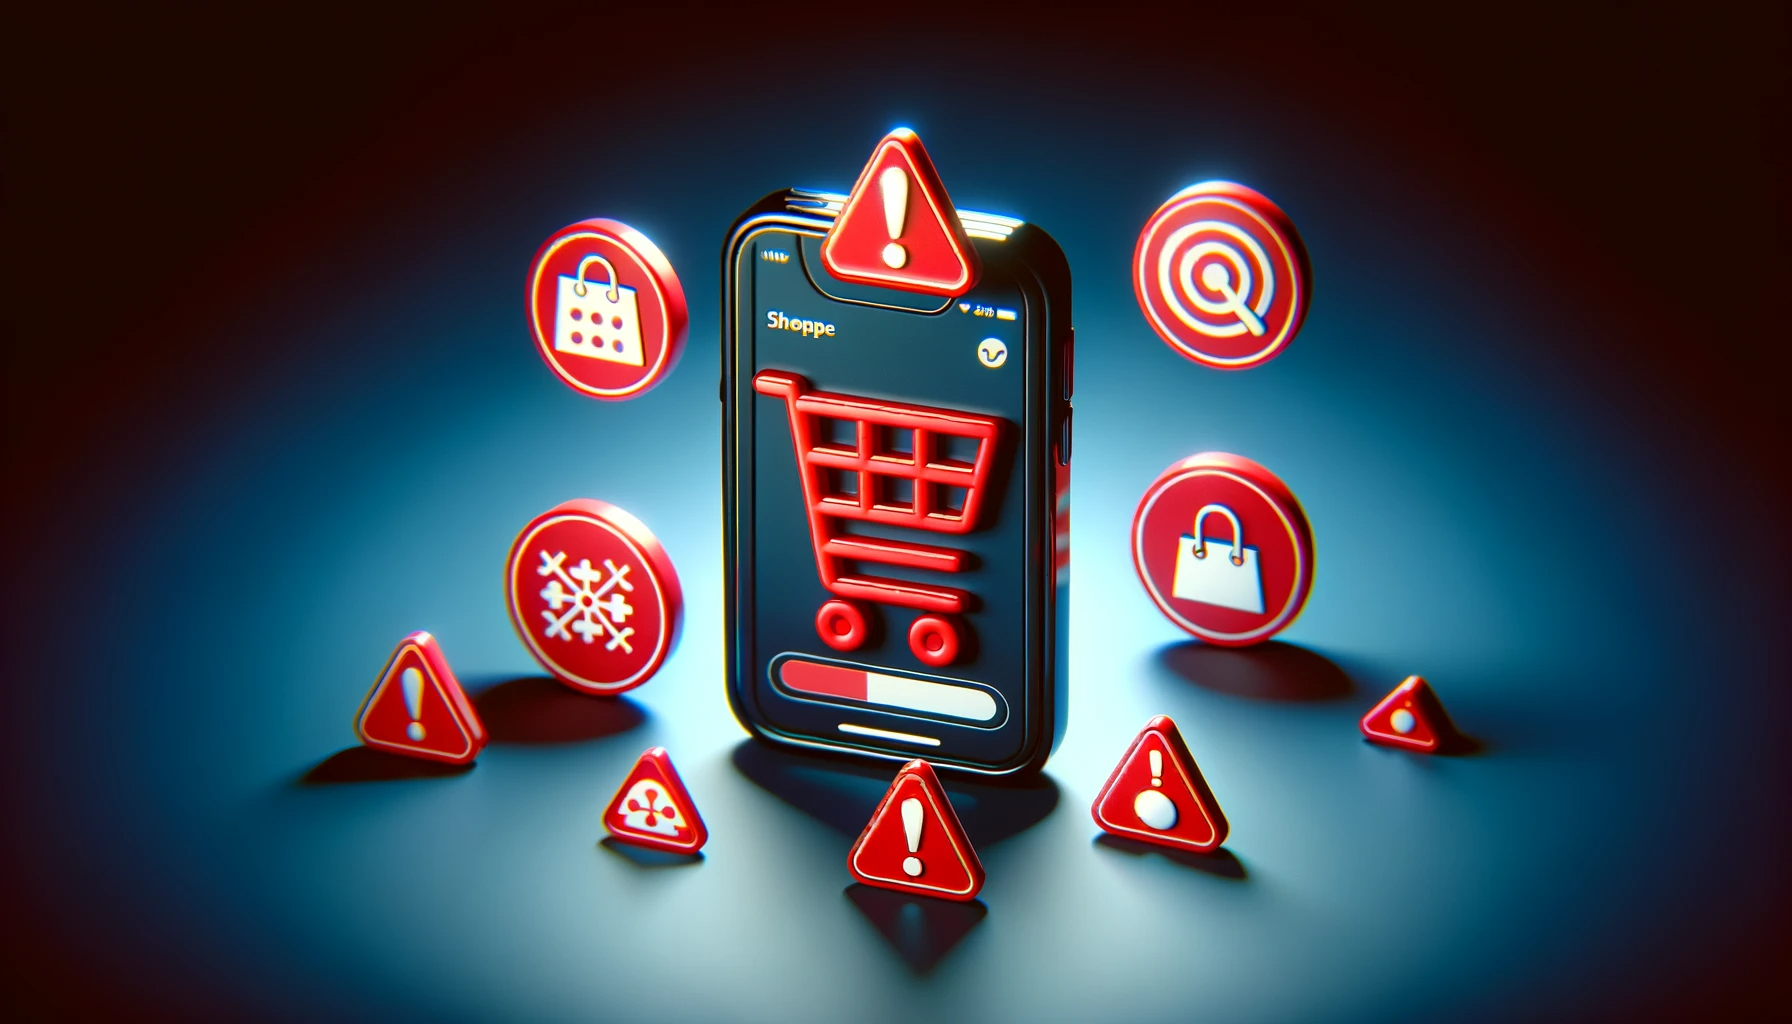 verbraucherzentrale warnt vor shopping app